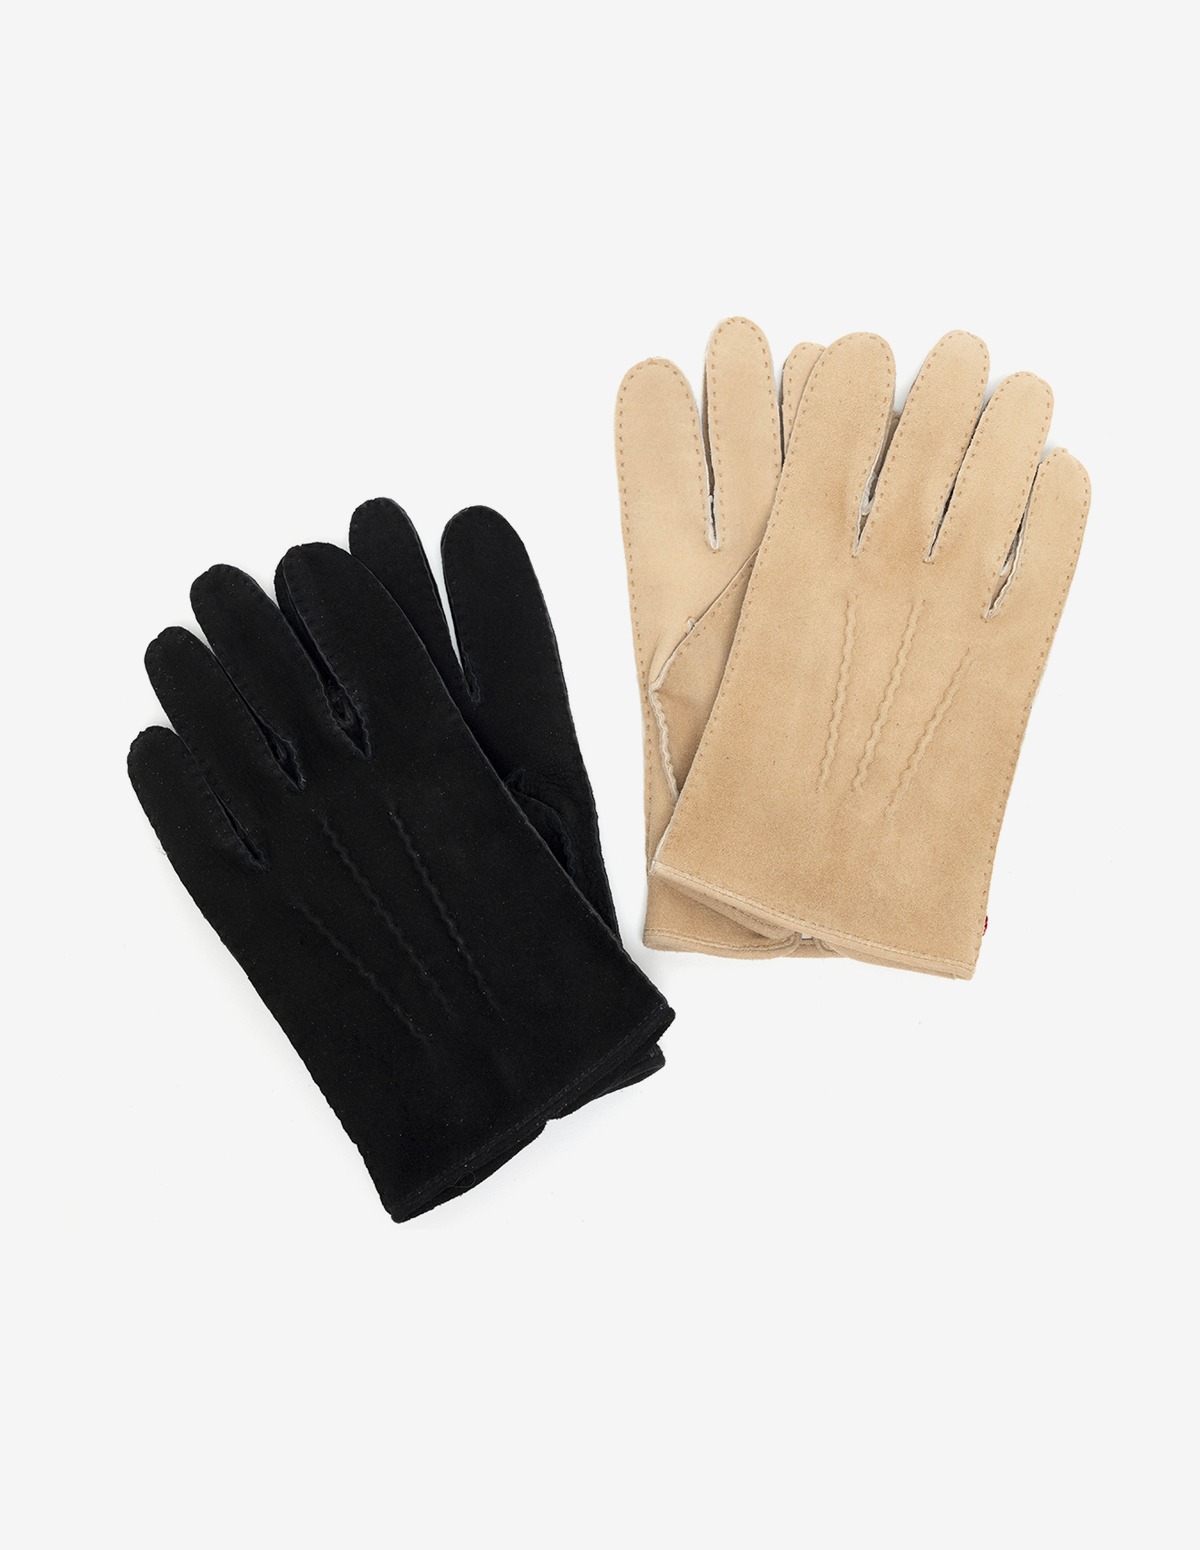 Wroxton Unlined Buckskin Leather Gloves